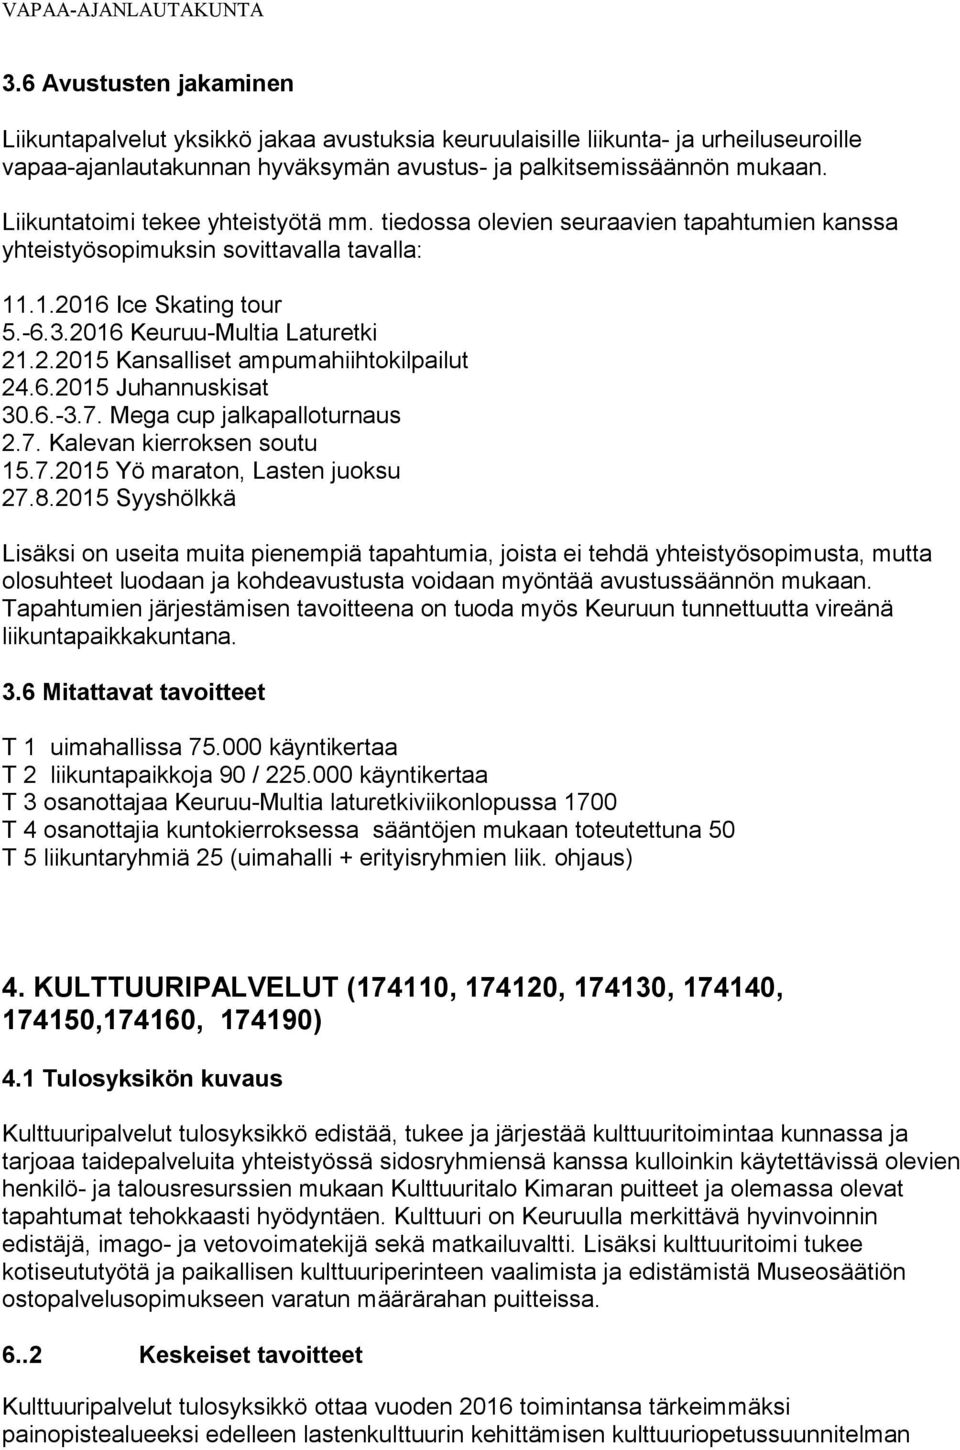 6.2015 Juhannuskisat 30.6.-3.7. Mega cup jalkapalloturnaus 2.7. Kalevan kierroksen soutu 15.7.2015 Yö maraton, Lasten juoksu 27.8.